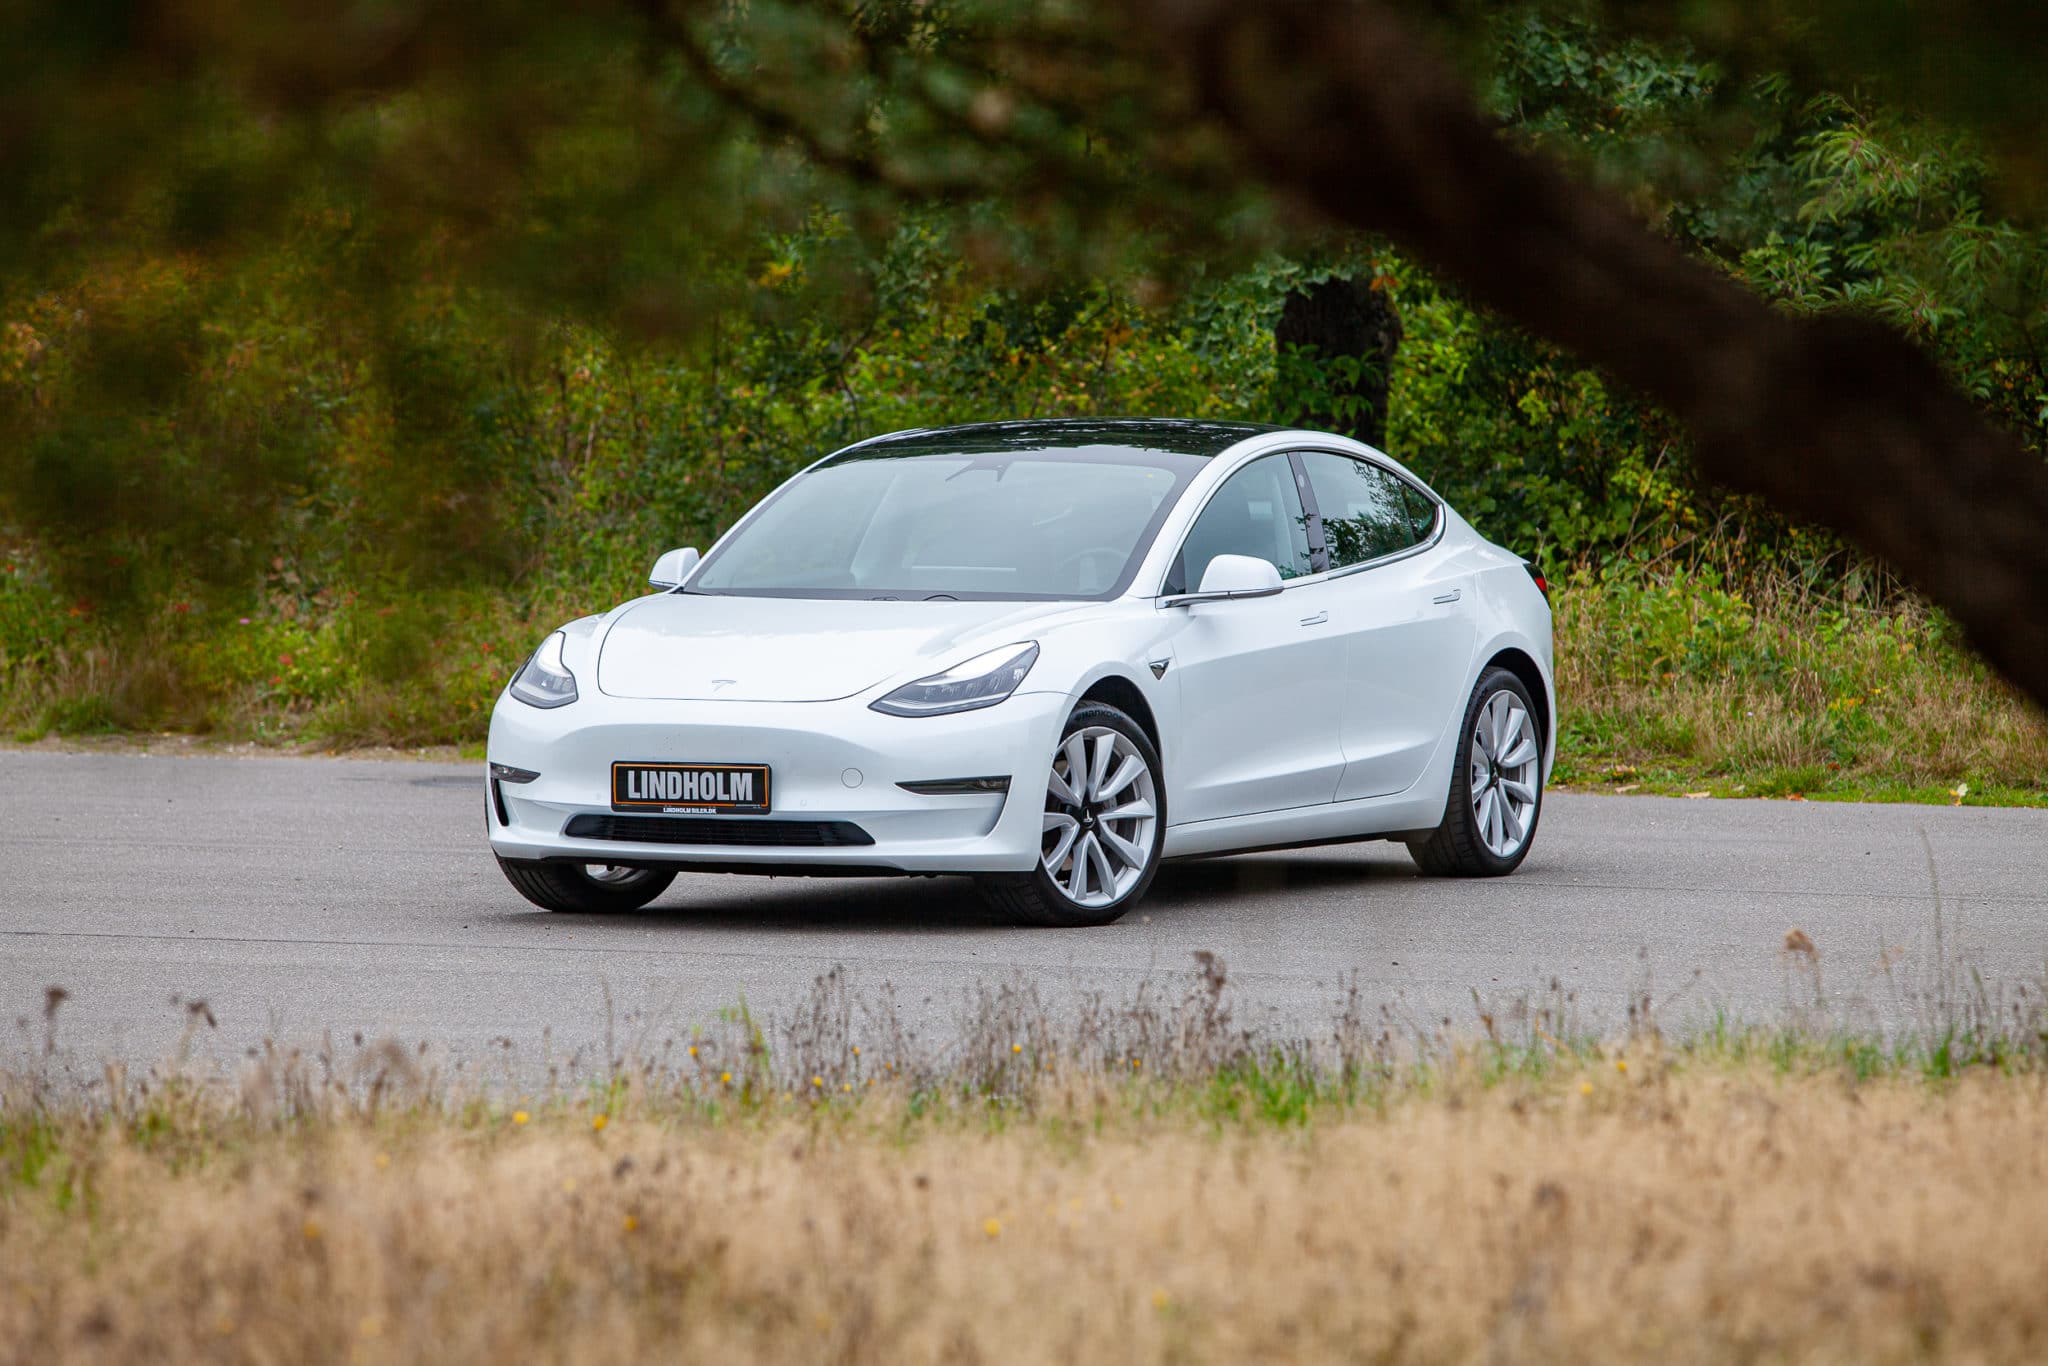 Brugttest: Tesla Model 3 - holder den elbil?